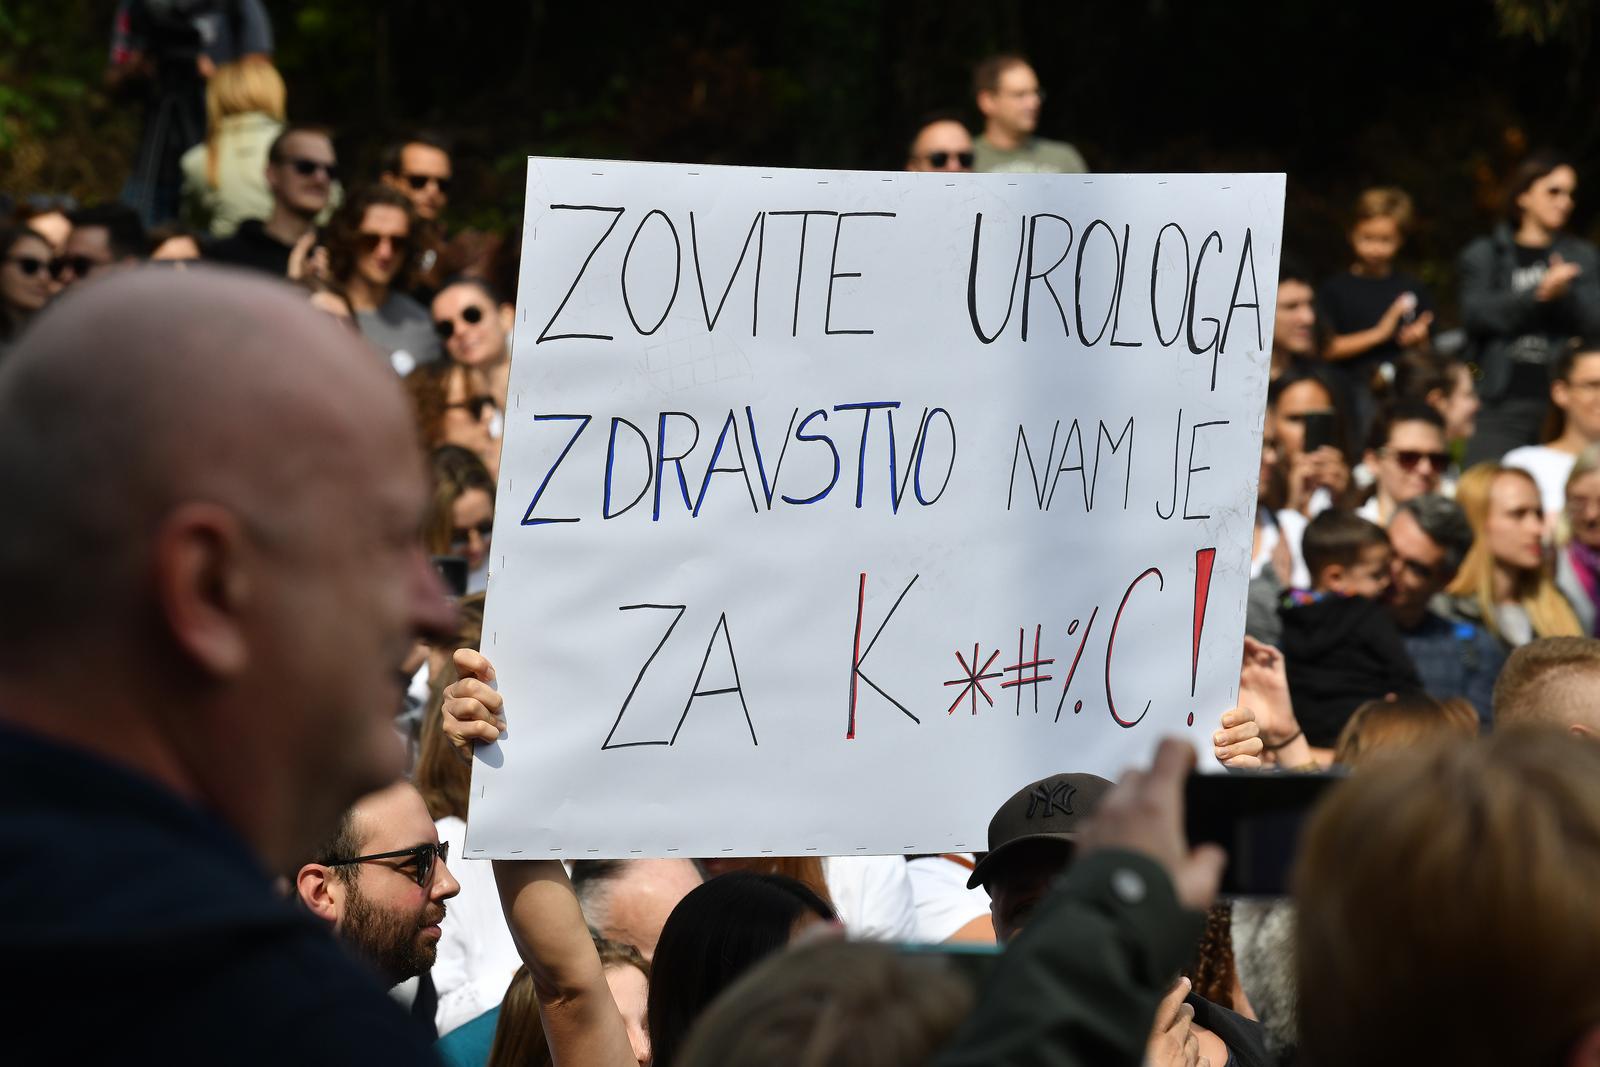 Ministar Beroš istaknuo je nelogičnost da je prvo najavljen prosvjed, a zatim je Inicijativa tek ovoga tjedna zatražila i razgovore u Ministarstvu o svojim zahtjevima.

